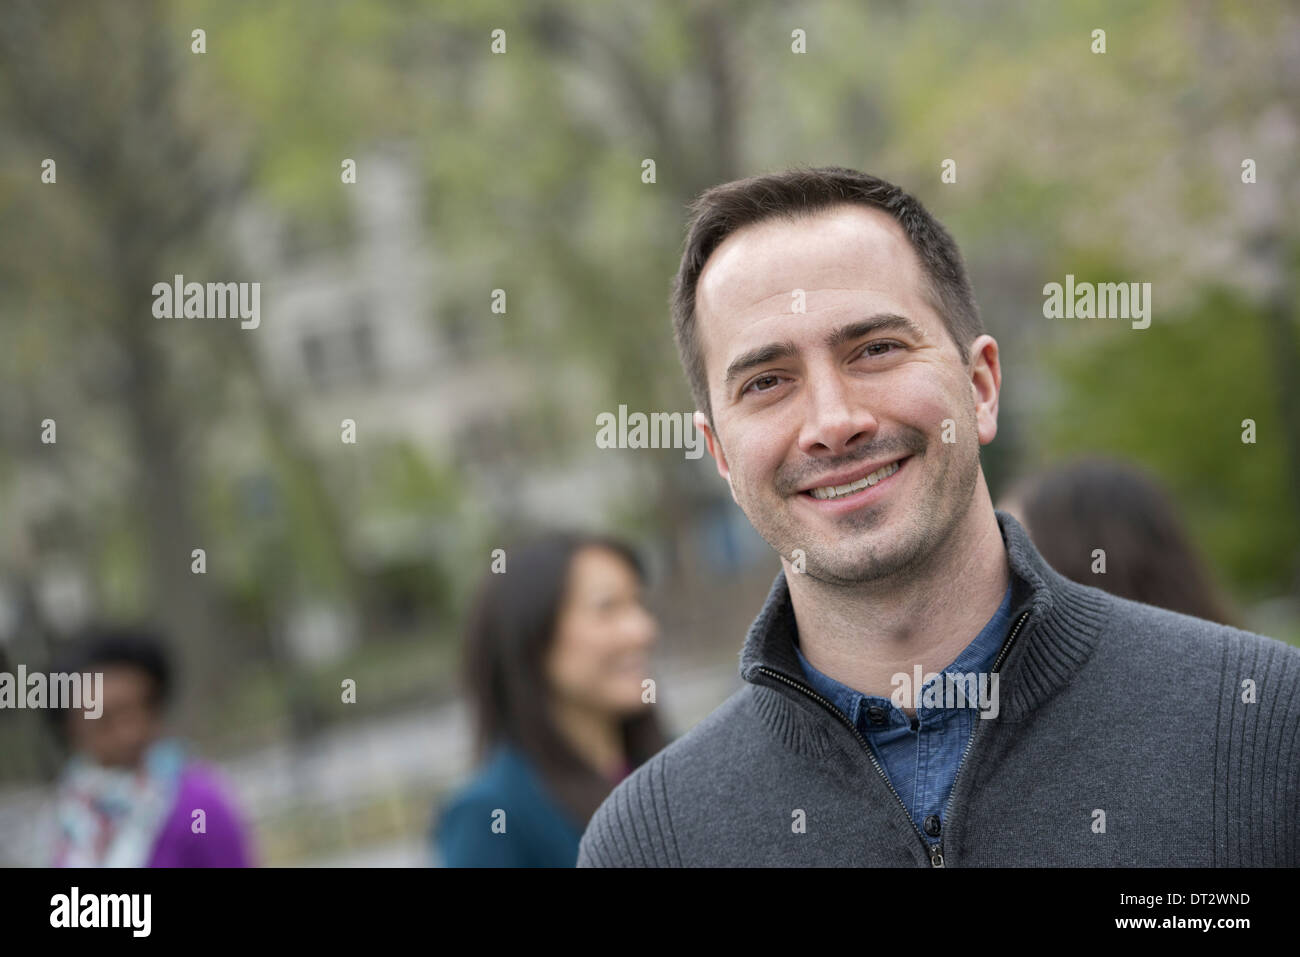 Eine Gruppe von Menschen in einer Stadt parken einen lächelnder Mann in einem grauen Pullover Stockfoto